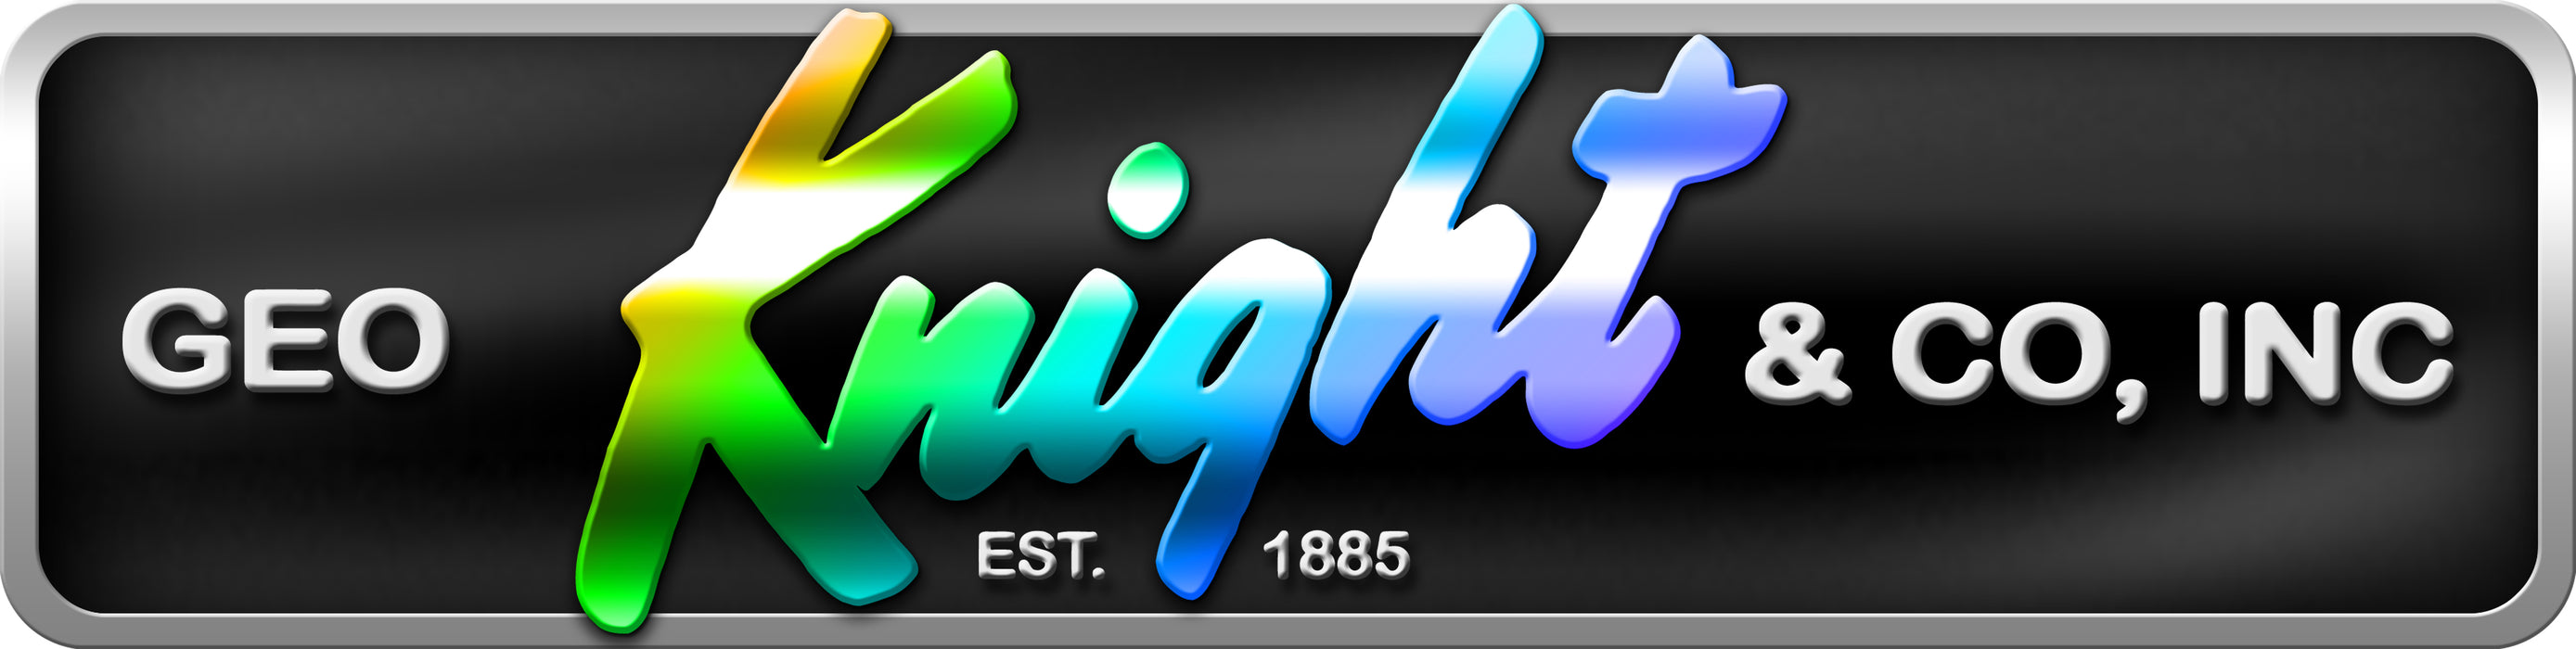 DK20 Heat Presses - Digital Knight 16x20 Clamshell - Geo Knight & Co Inc